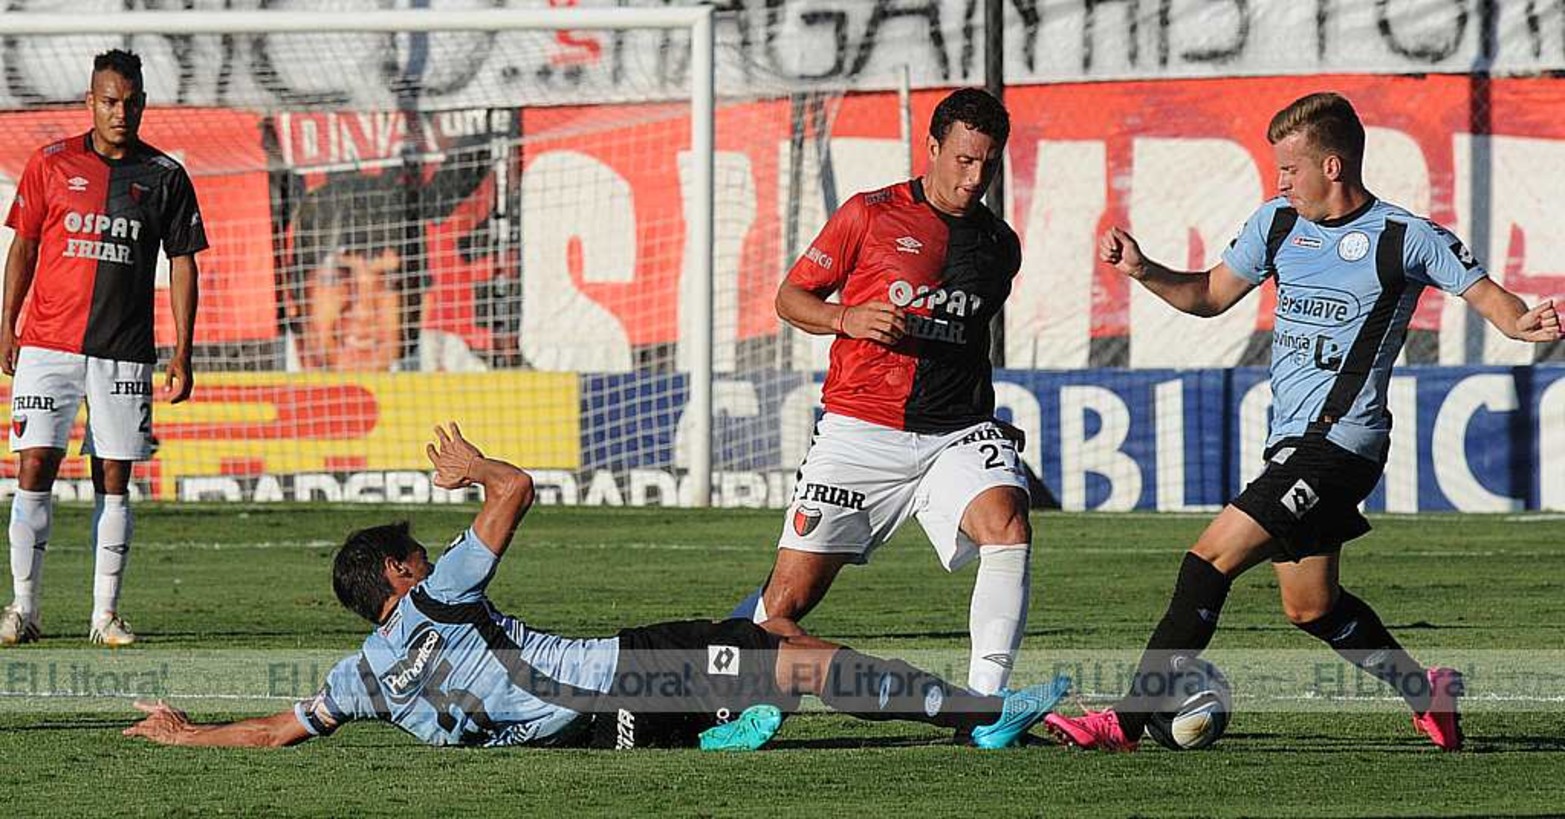 Colón y Belgrano dispurtaron el partido de ida de la Pre Liguilla Sudamericana. El próximo sábado se juega en Córdoba